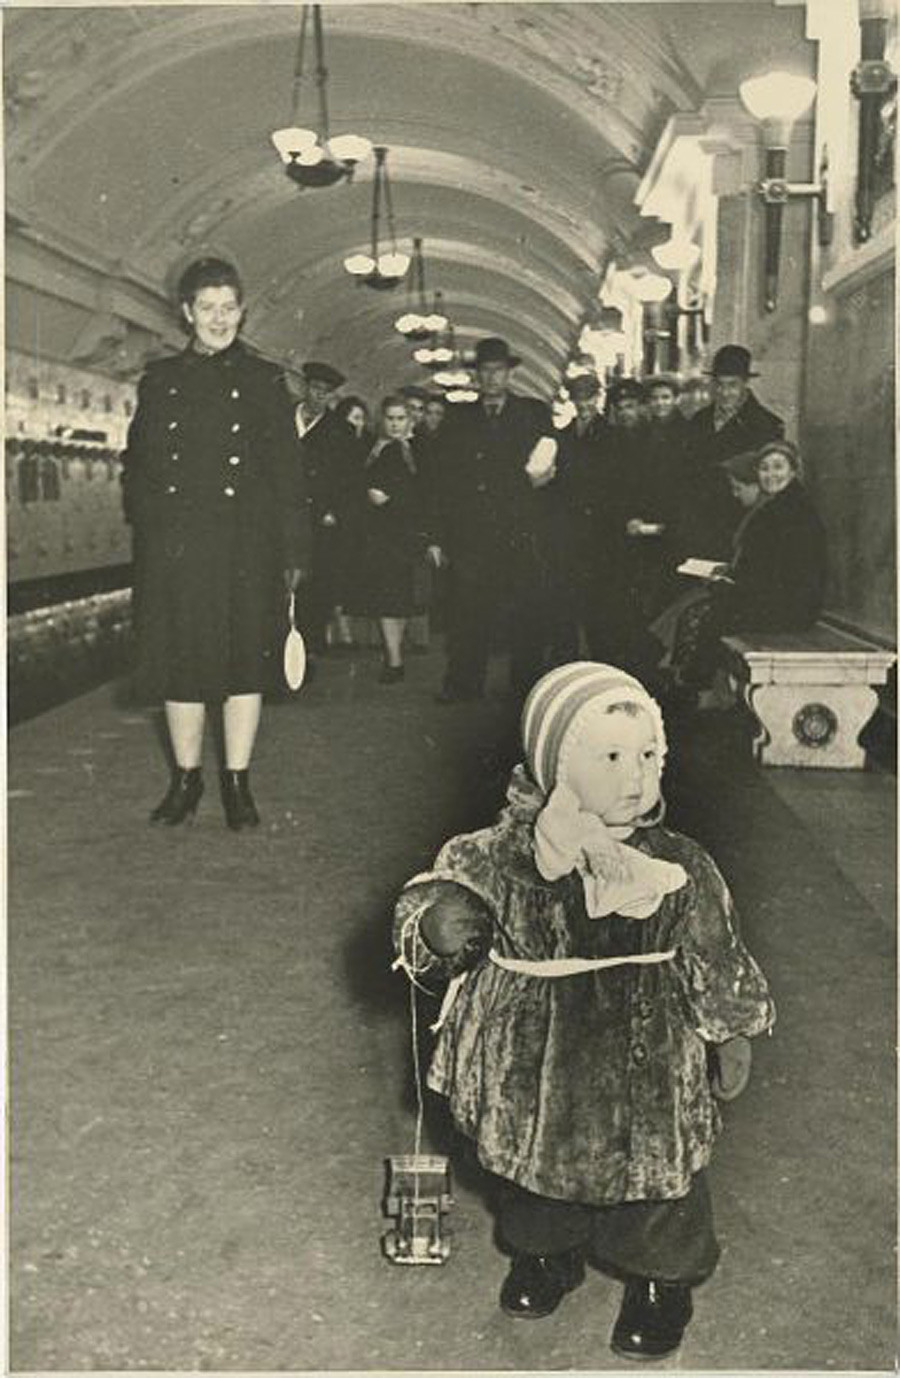 In der U-Bahn, 1950er

